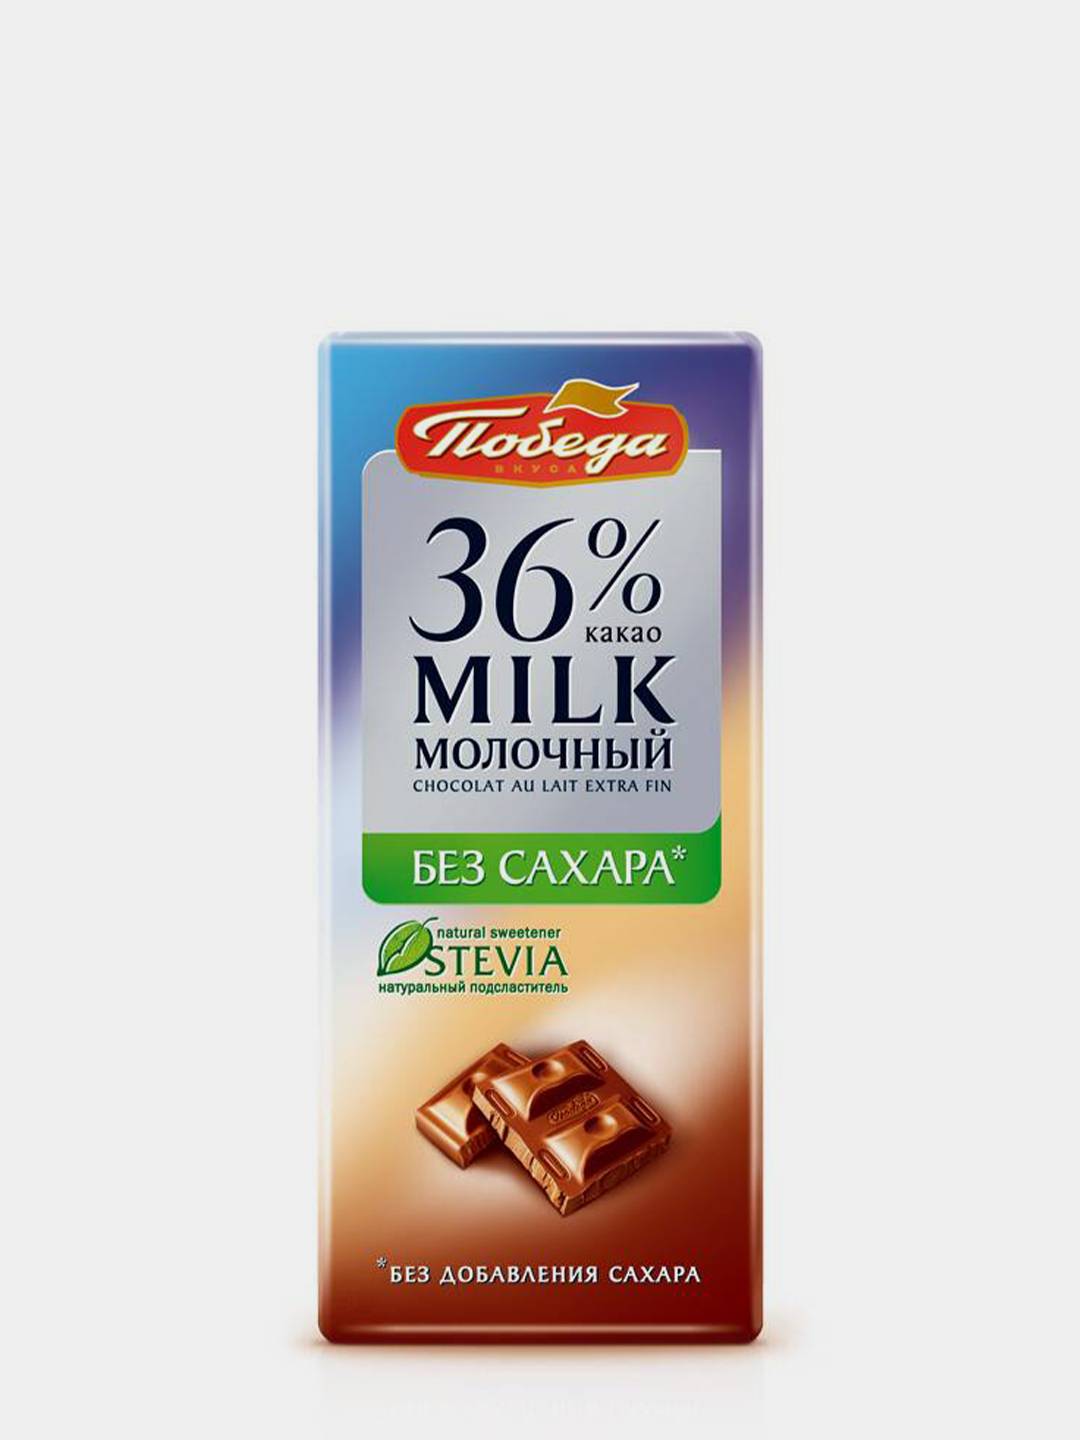 Шоколад Молочный без сахара 36% какао 100г/(Победа)